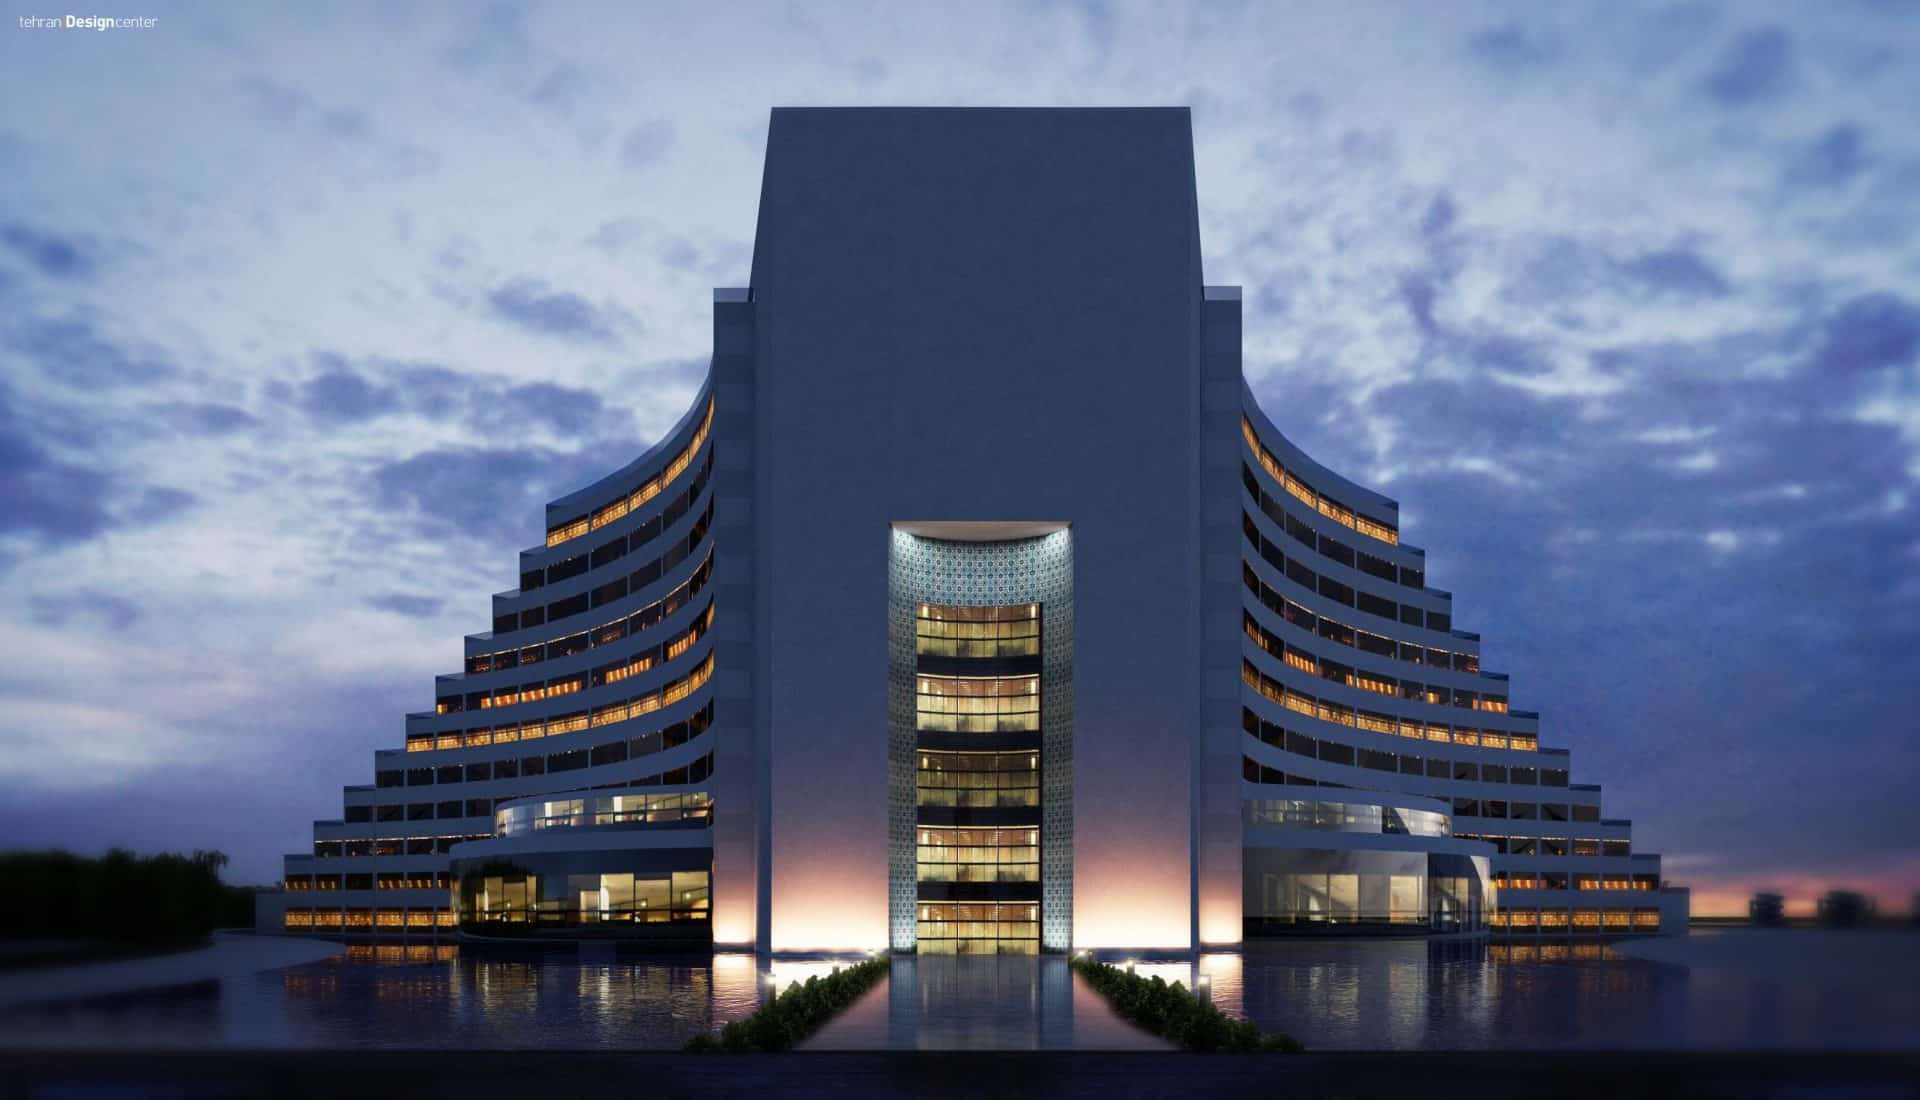 ورودی هتل سیراف | شرکت معماری داخلی و دکوراسیون تهران دیزاین سنتر